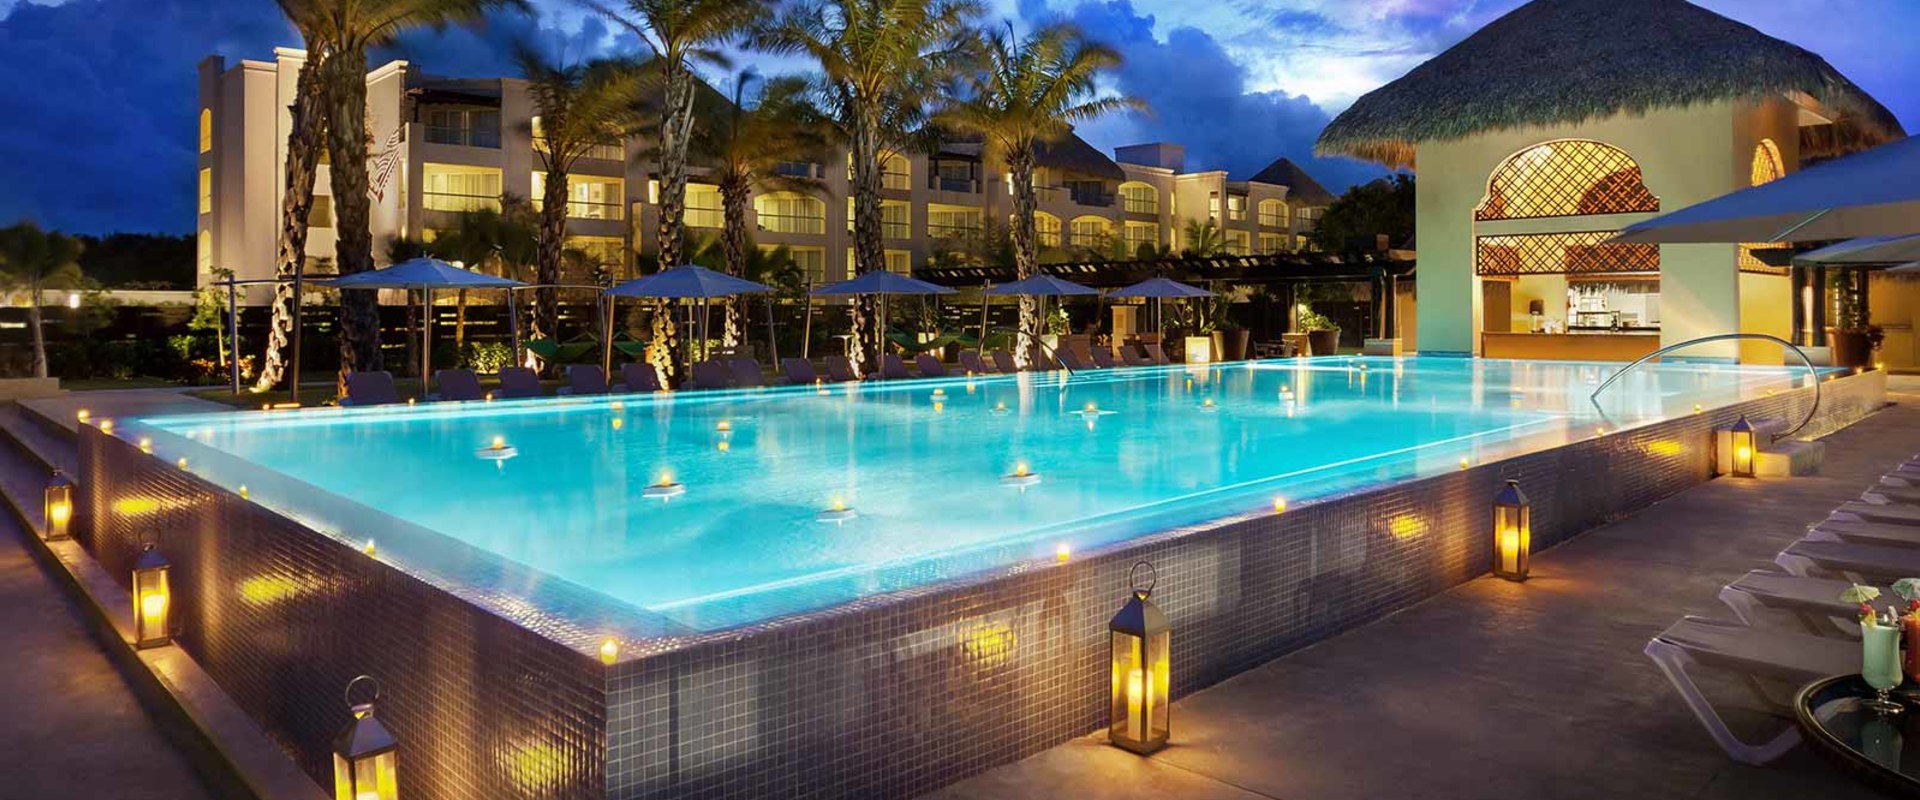 The Best Casino Hotels in Punta Cana